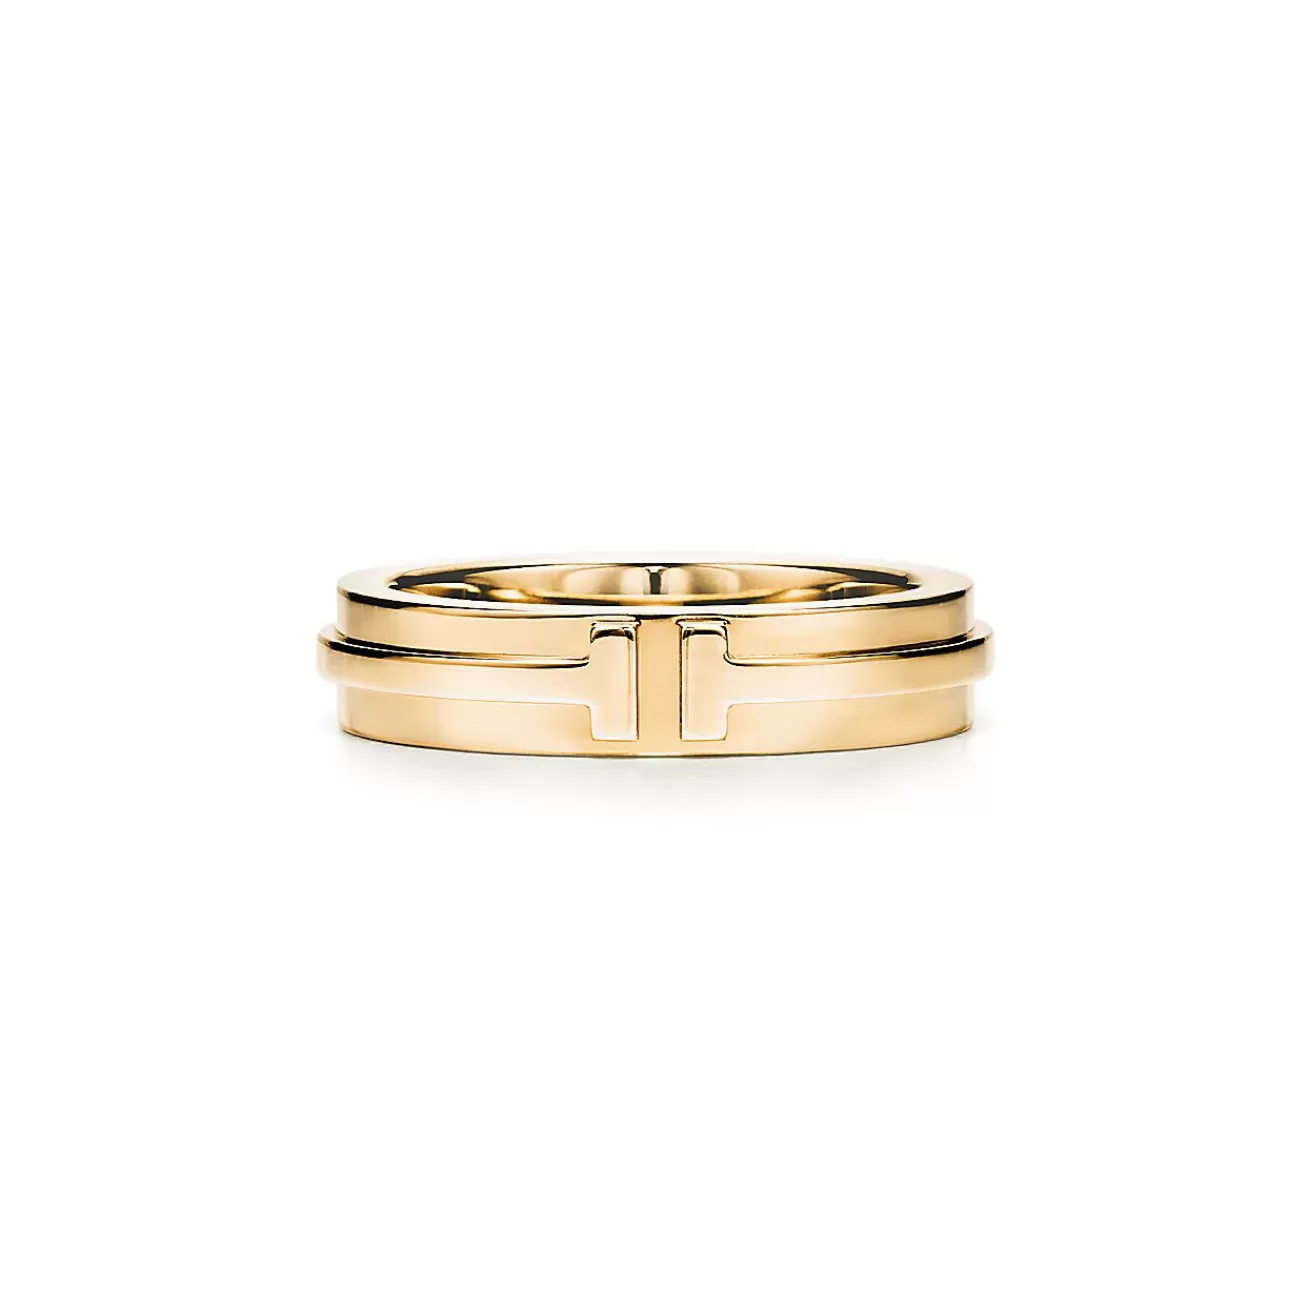 Tiffany & Co. Tiffany T narrow ring in 18k gold, 4.5 mm wide. | ^Women Rings | Men's Jewelry